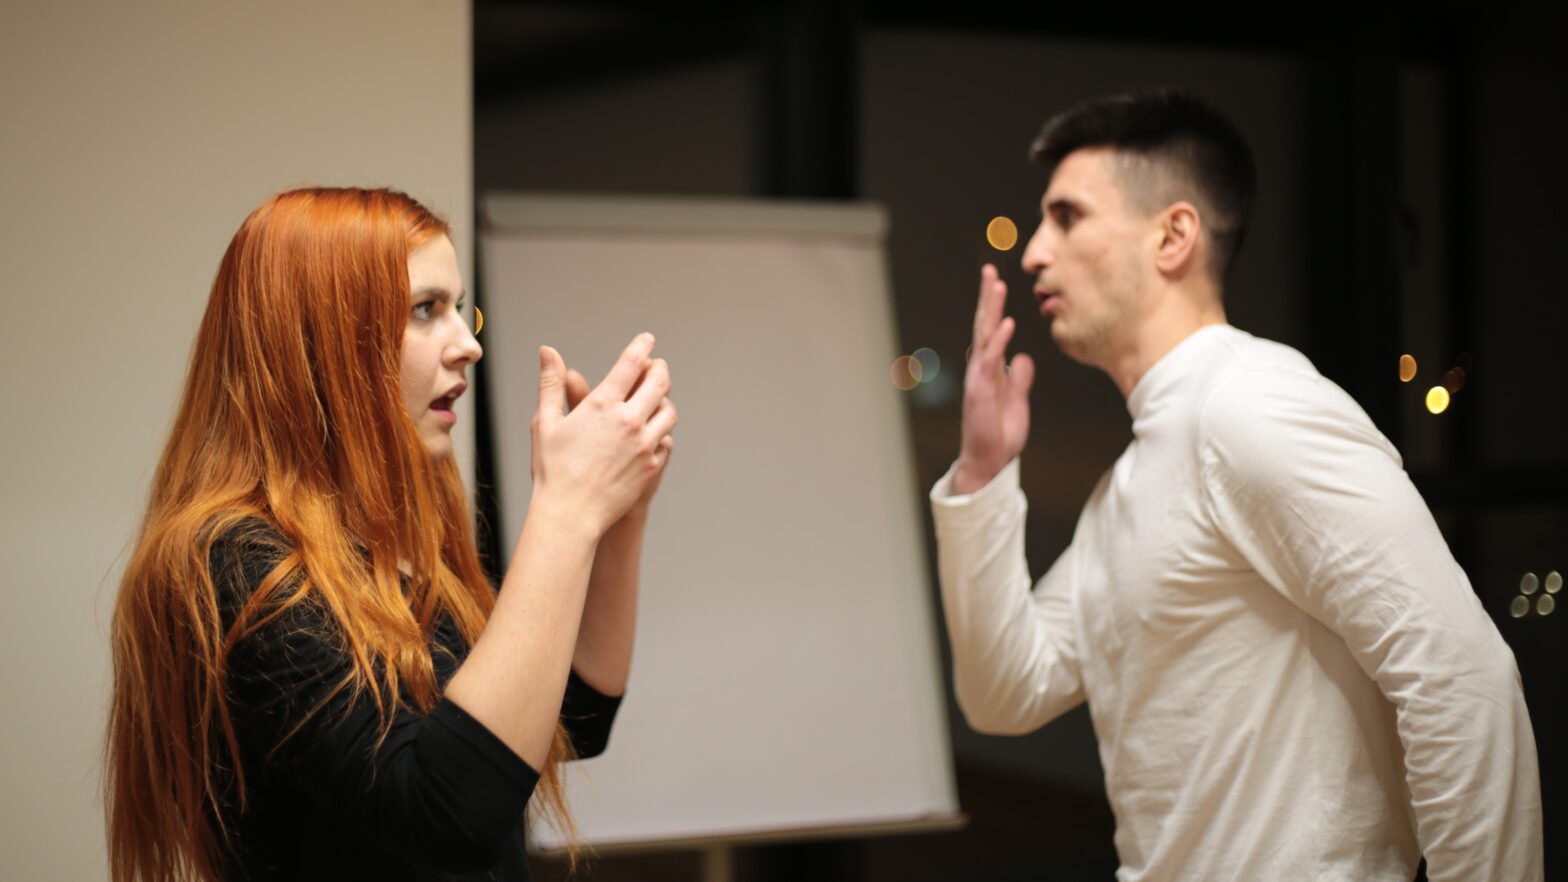 Scena teatralna. Młoda kobieta stoi z lewej strony i rozmawia z mężczyzną stojącym naprzeciwko gestykulując. Mężczyzna prawą dłonią zakrywa usta.